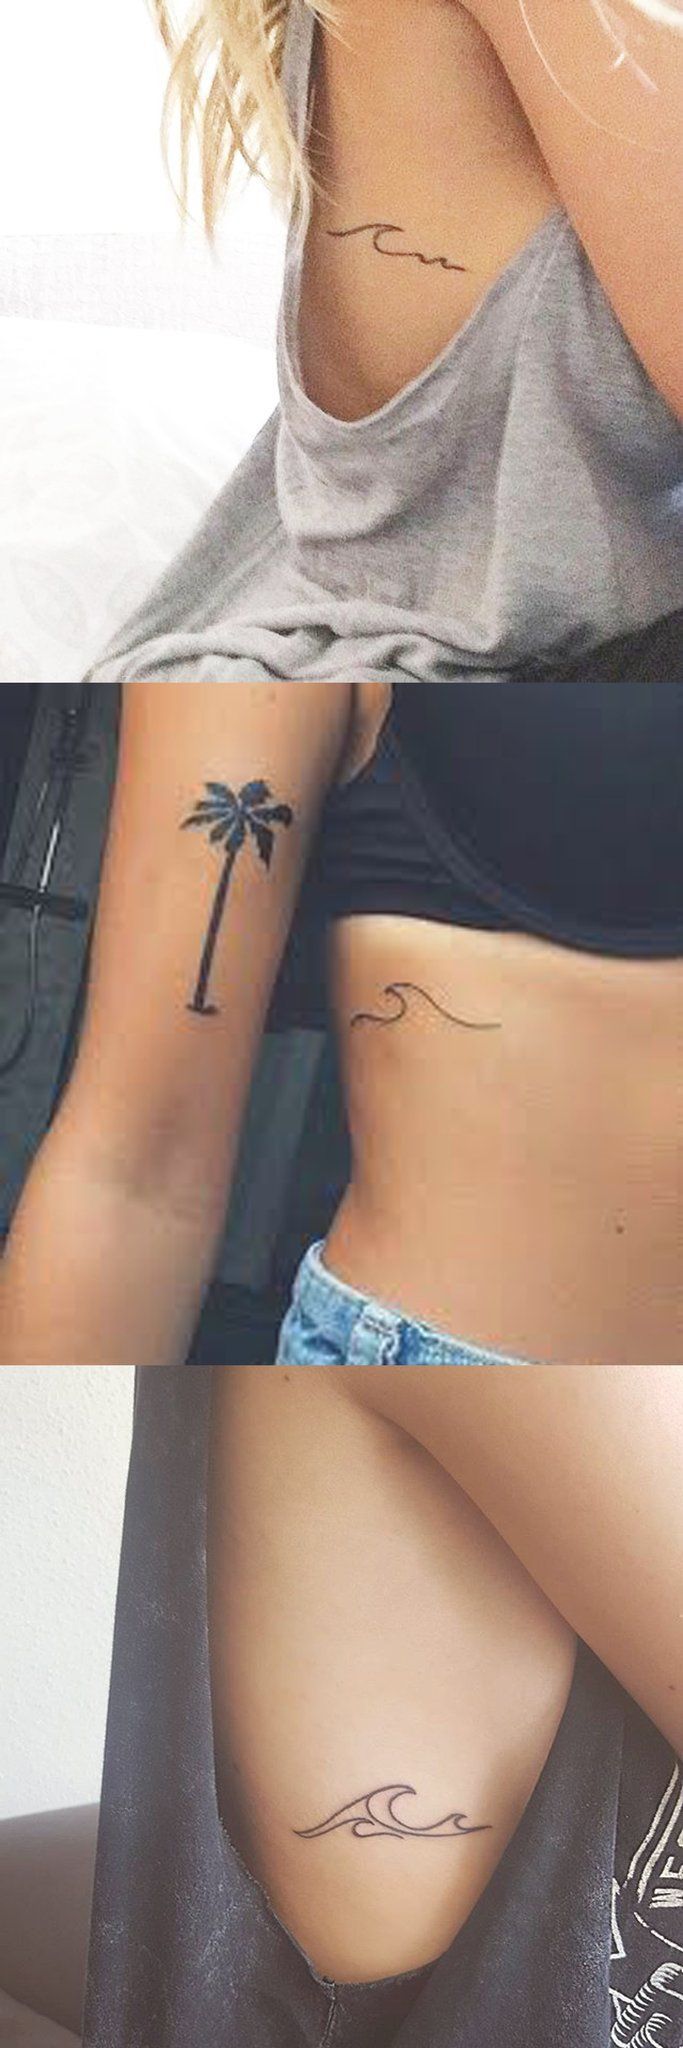 Minimalist Small Tattoo Ideas for Women - Surf Wave Beach Ocean Rib Tatt - Palm ...